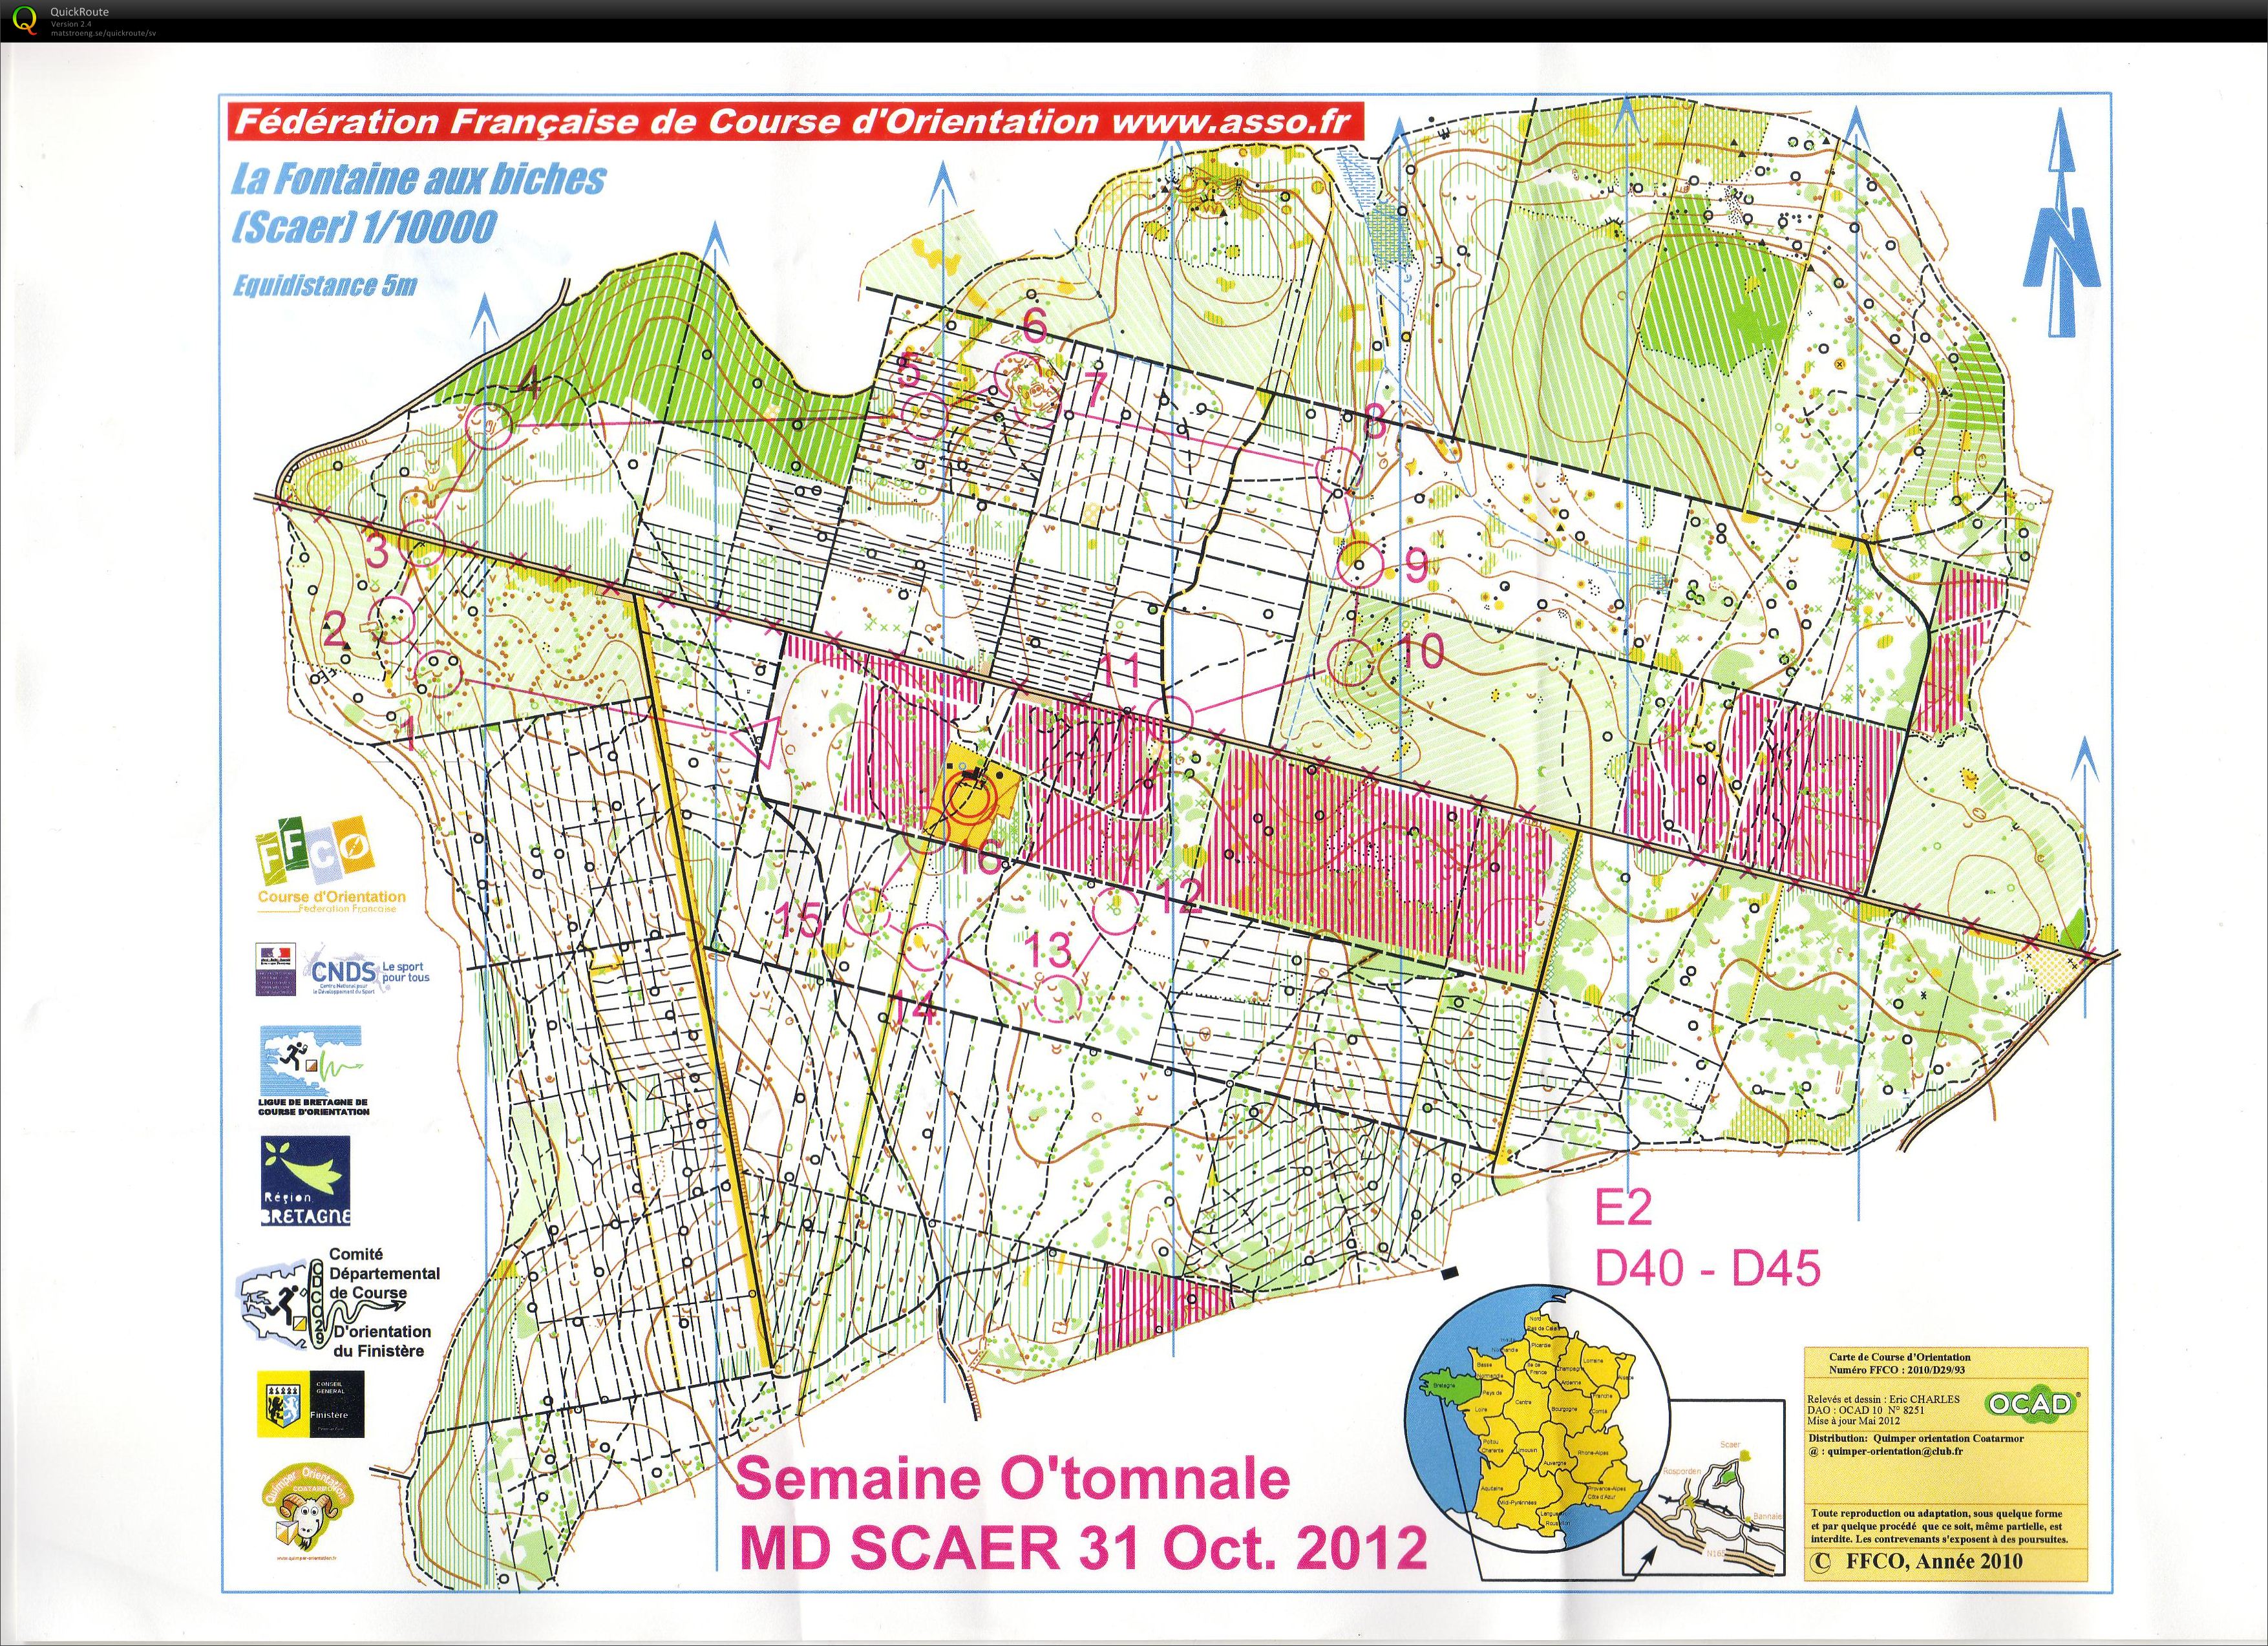 Semaine O'tomnale - E2 (31.10.2012)